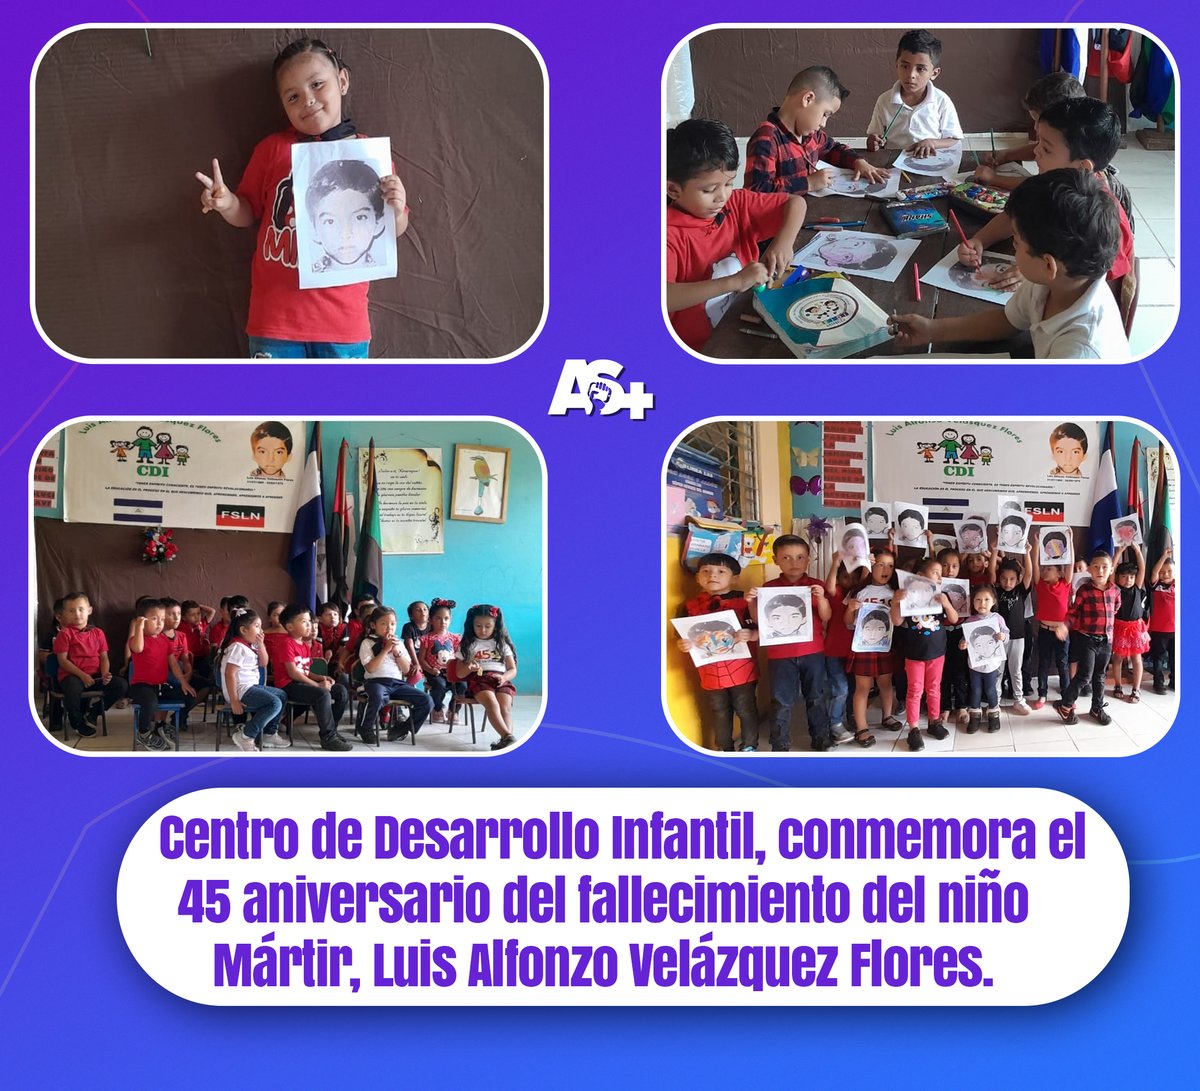 El gobierno de #Nicaragaua, a través del Centro de Desarrollo Infantil, Luis Alfonzo Velázquez Flores en el municipio de #Siuna conmemora el 45 aniversario de su fallecimiento.📷📷 Hoy reafirmamos nuestro compromiso con su legado. #SoberaníayDignidadNacional #AdelanteSiempre